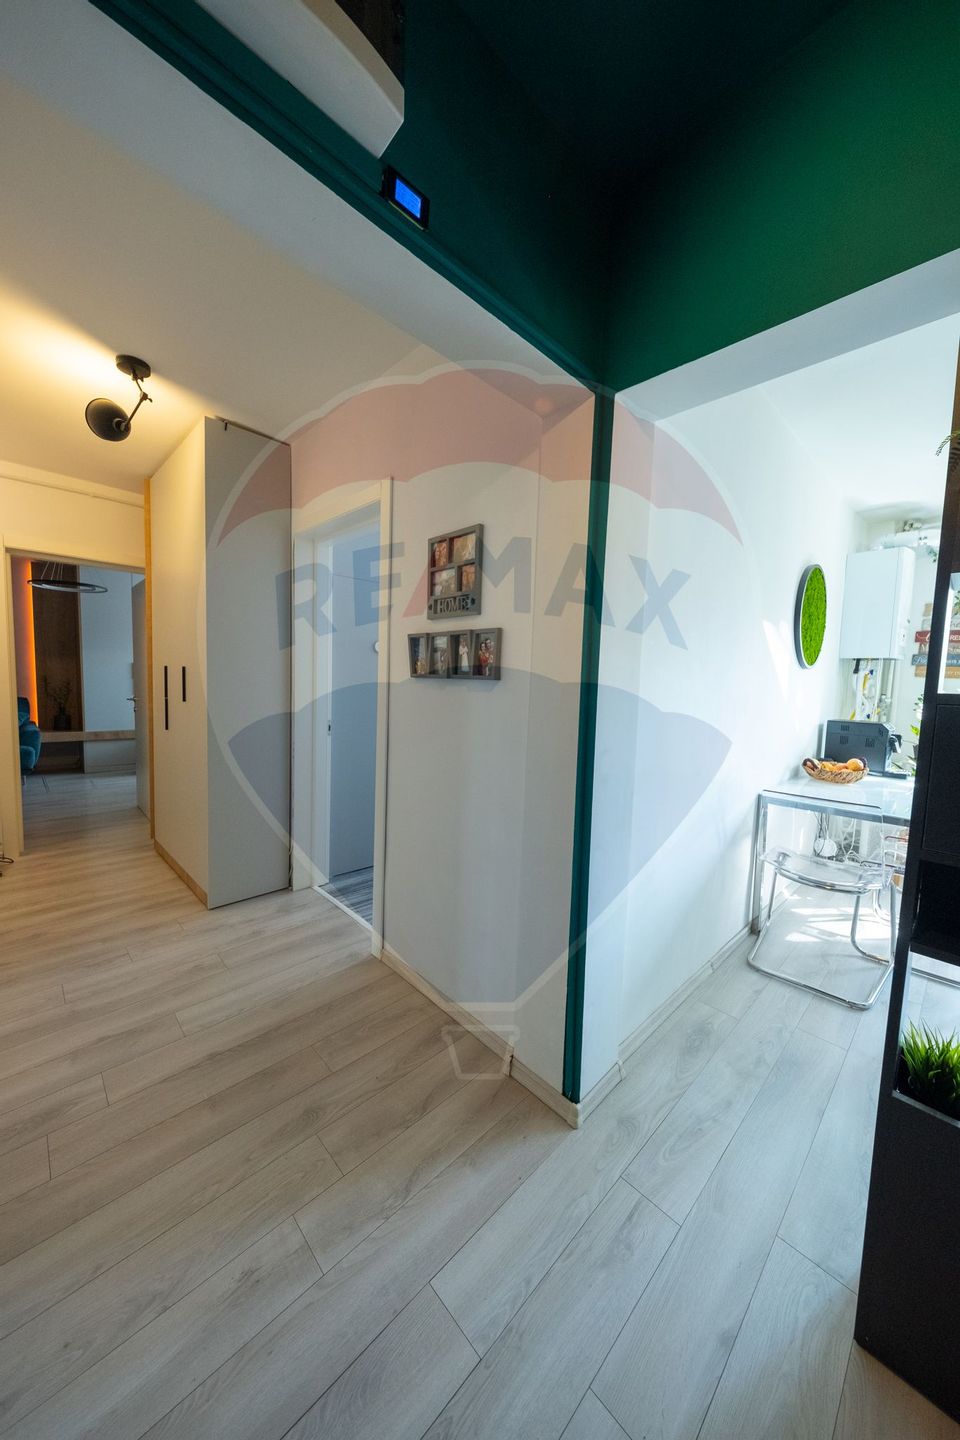 Apartament 2 camere decomandat CENTRALA PROPRIE Turda/ Ion Mihalache